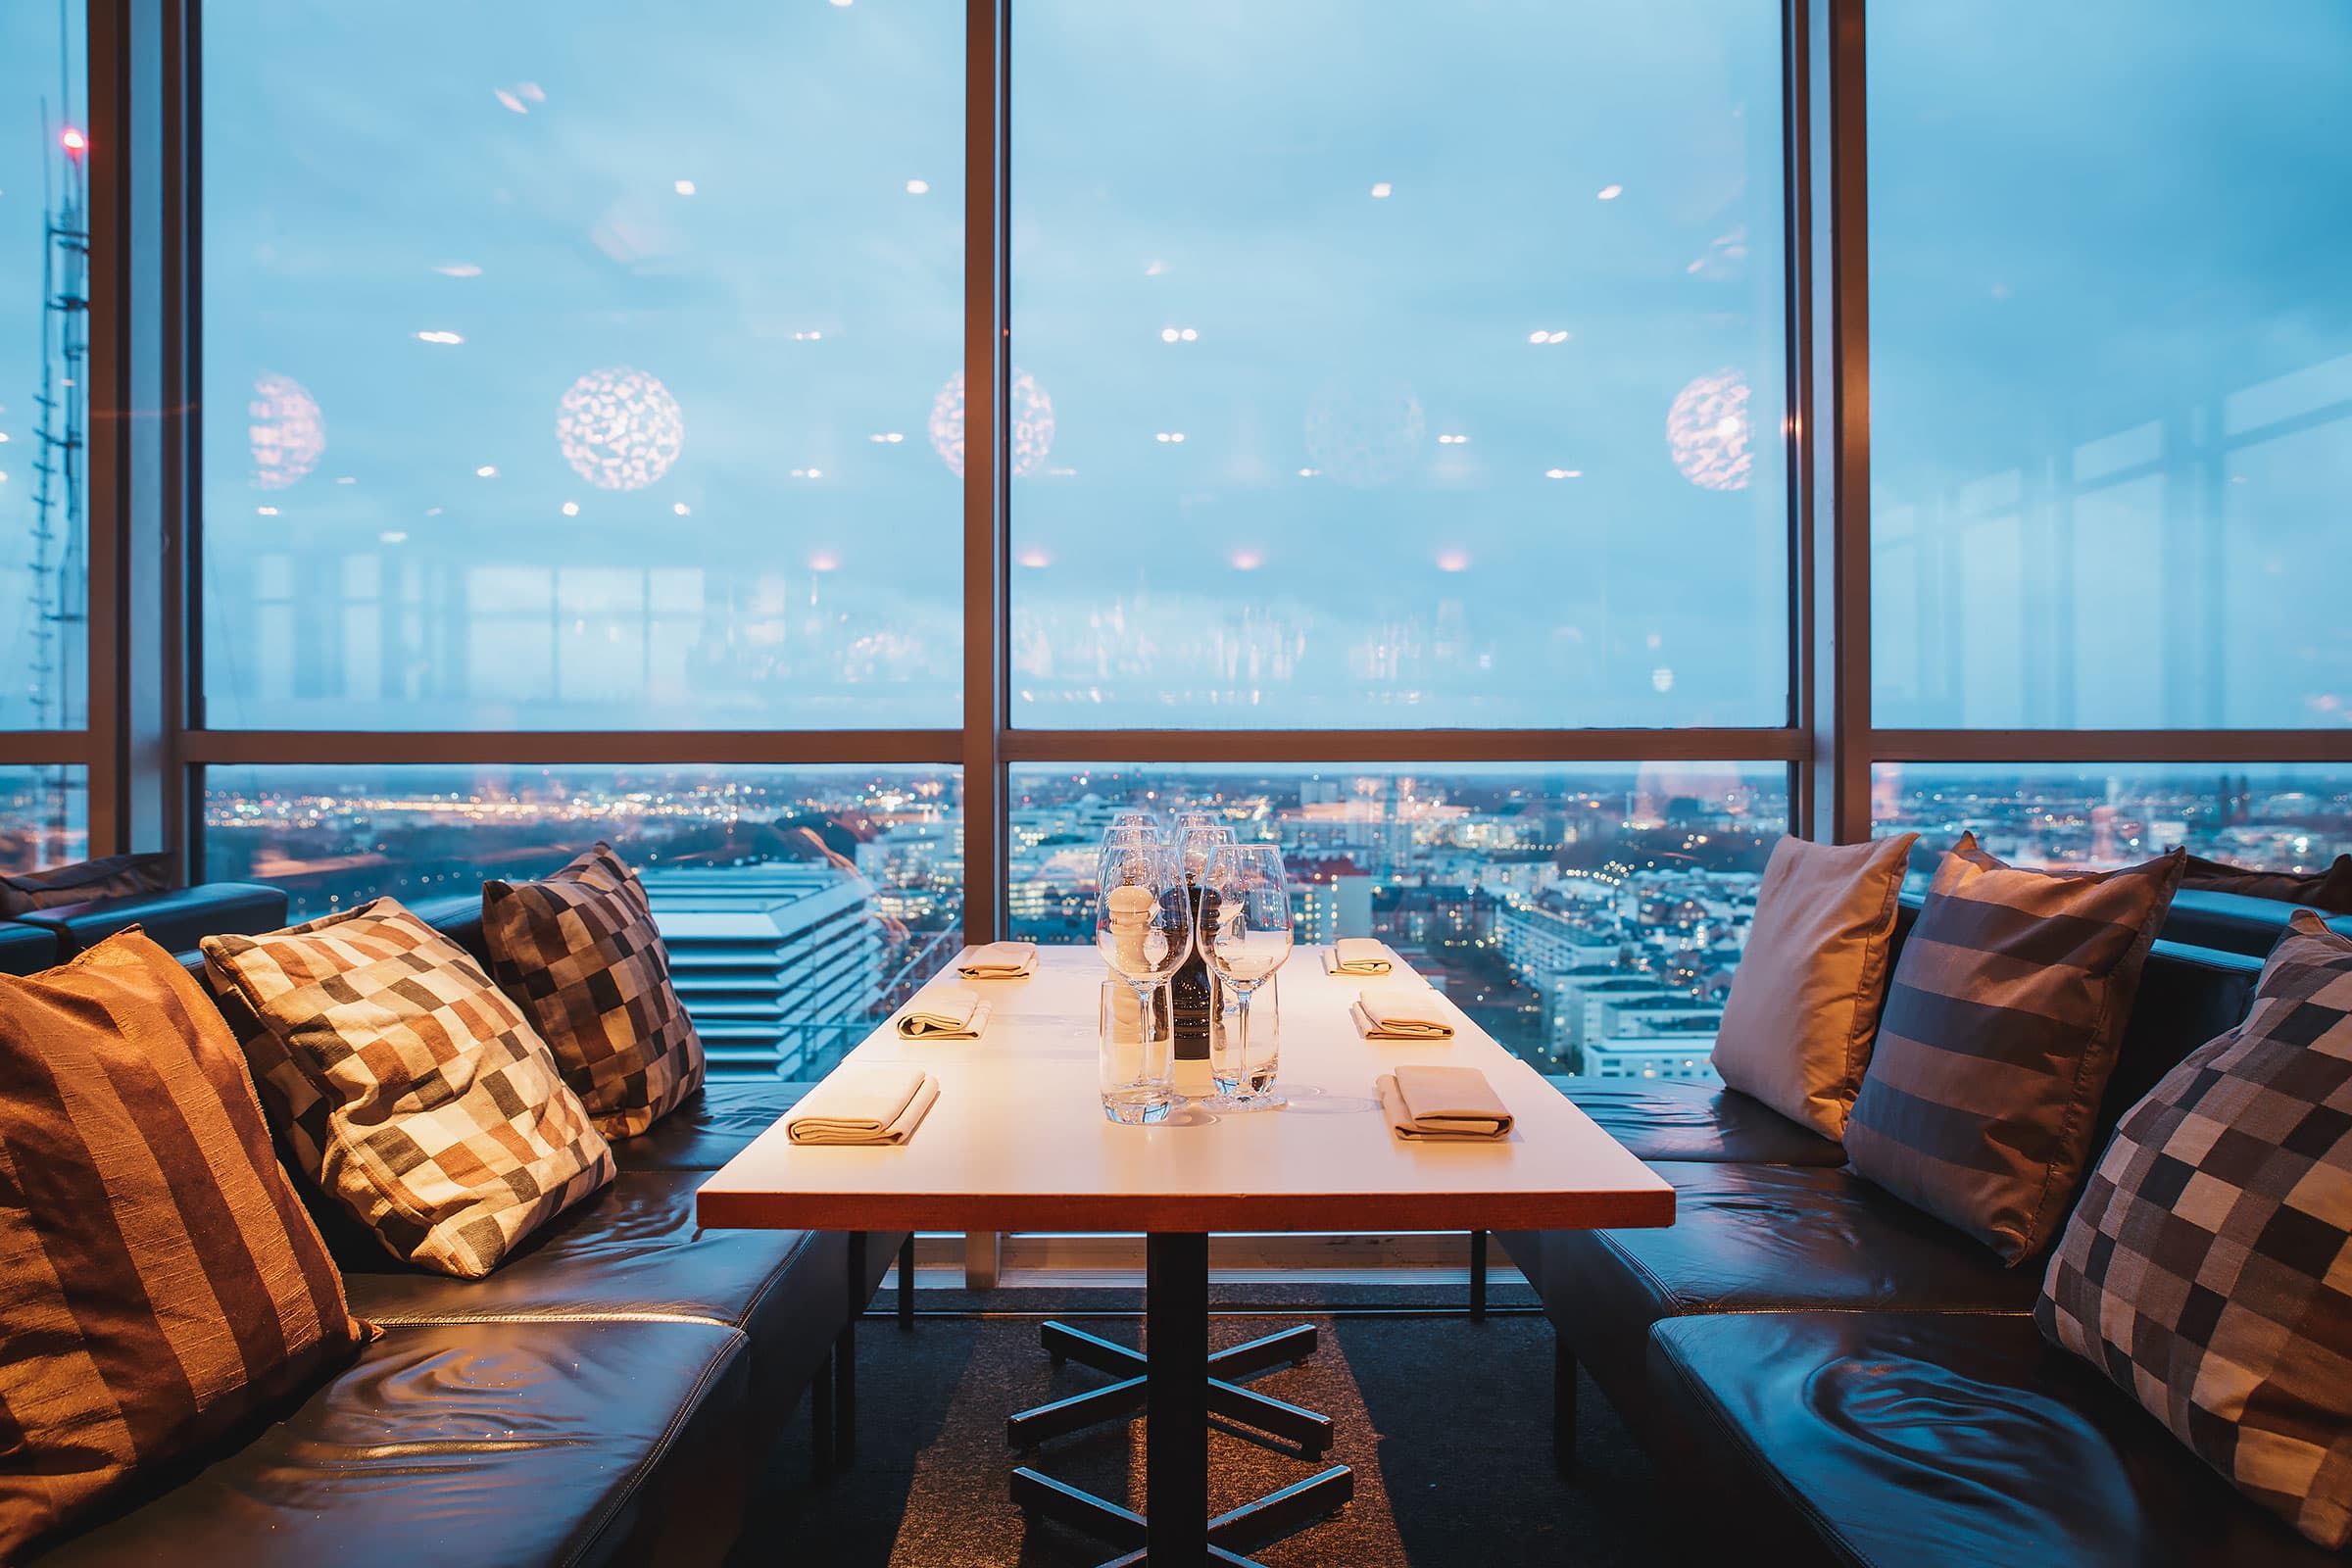 Tips på romantiska restauranger i Stockholm